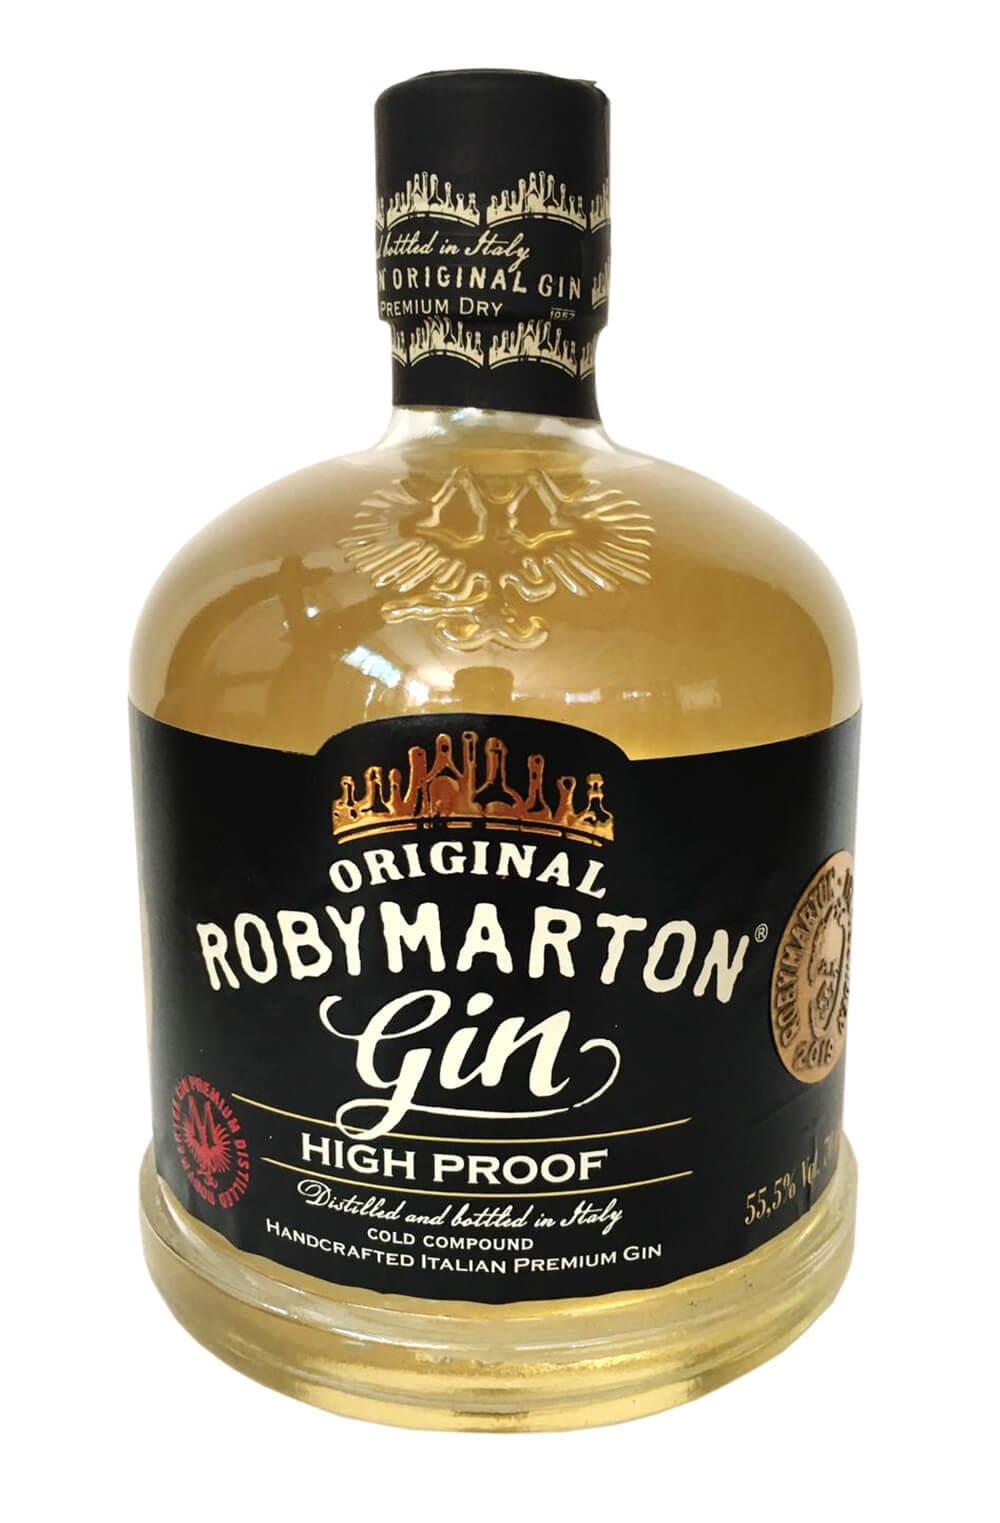 Roby Marton gin exclusive White label 47% 0,7L